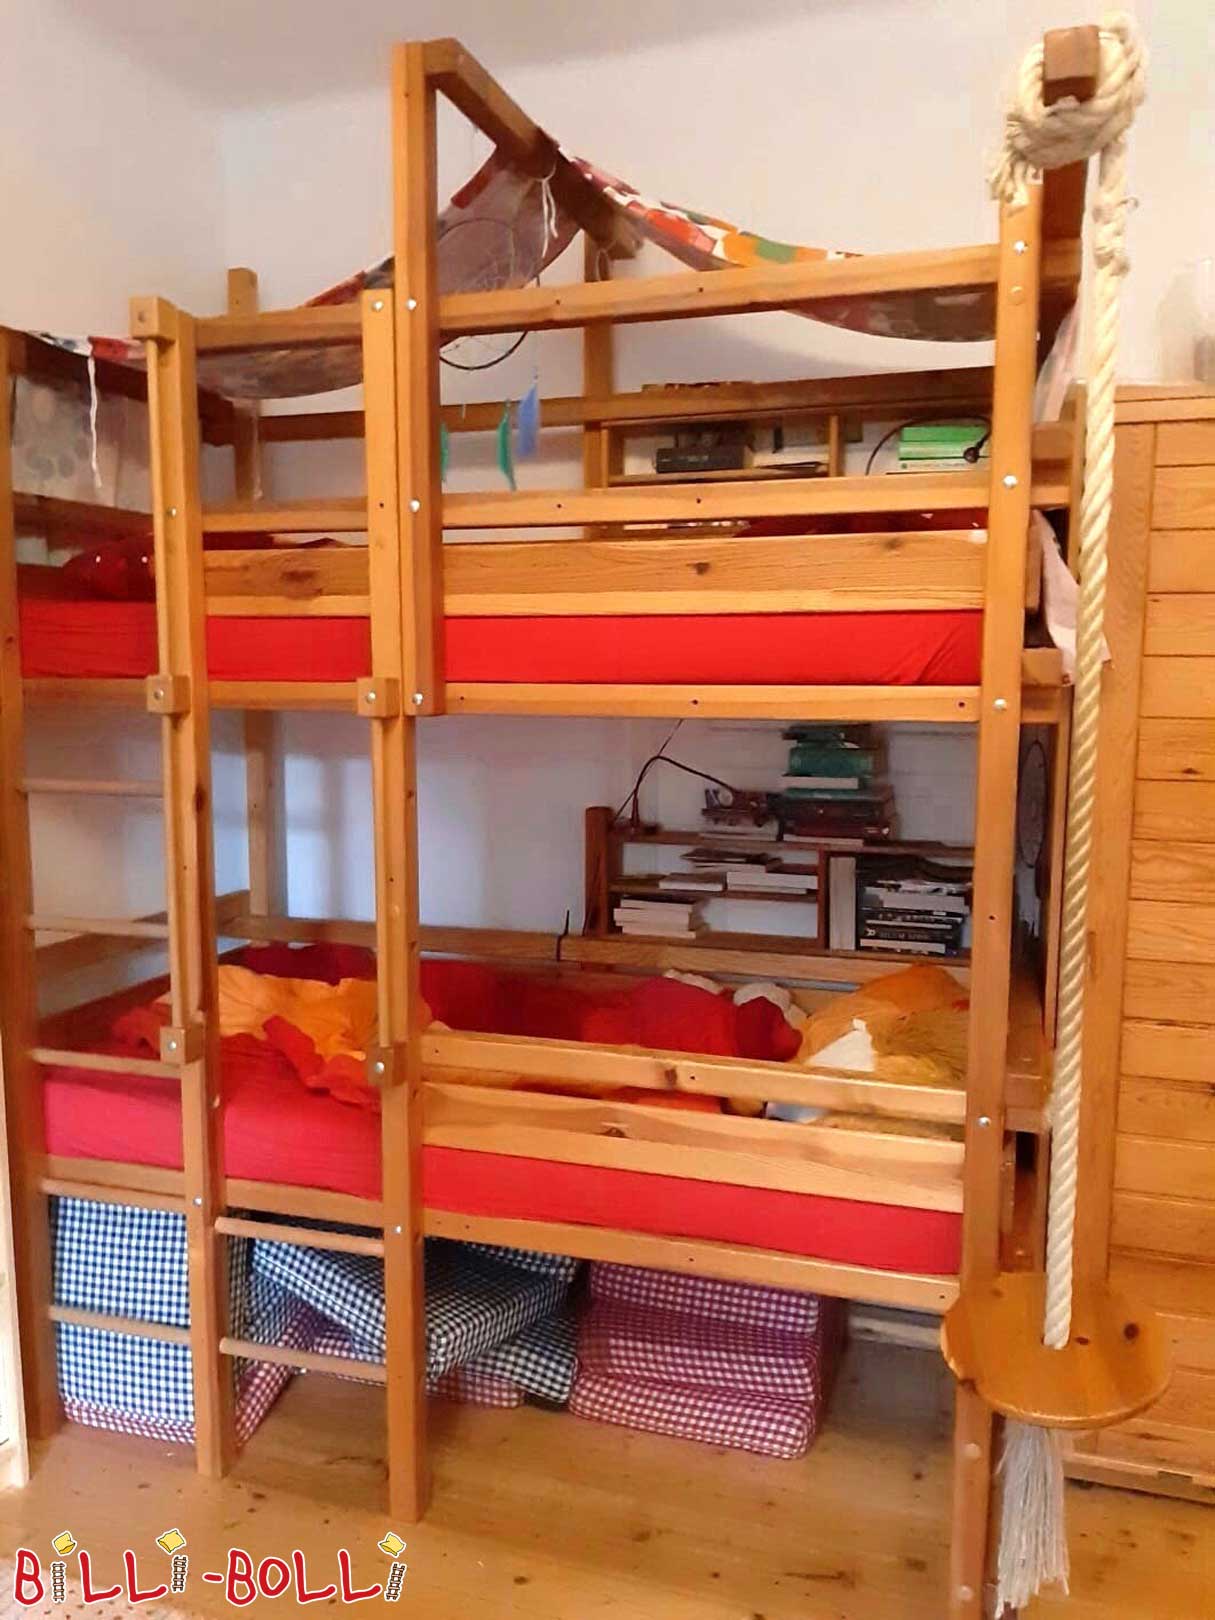 Двухъярусная кровать очень высокая и растущая вместе с ребенком (Категория: Используемая кровать-чердак)